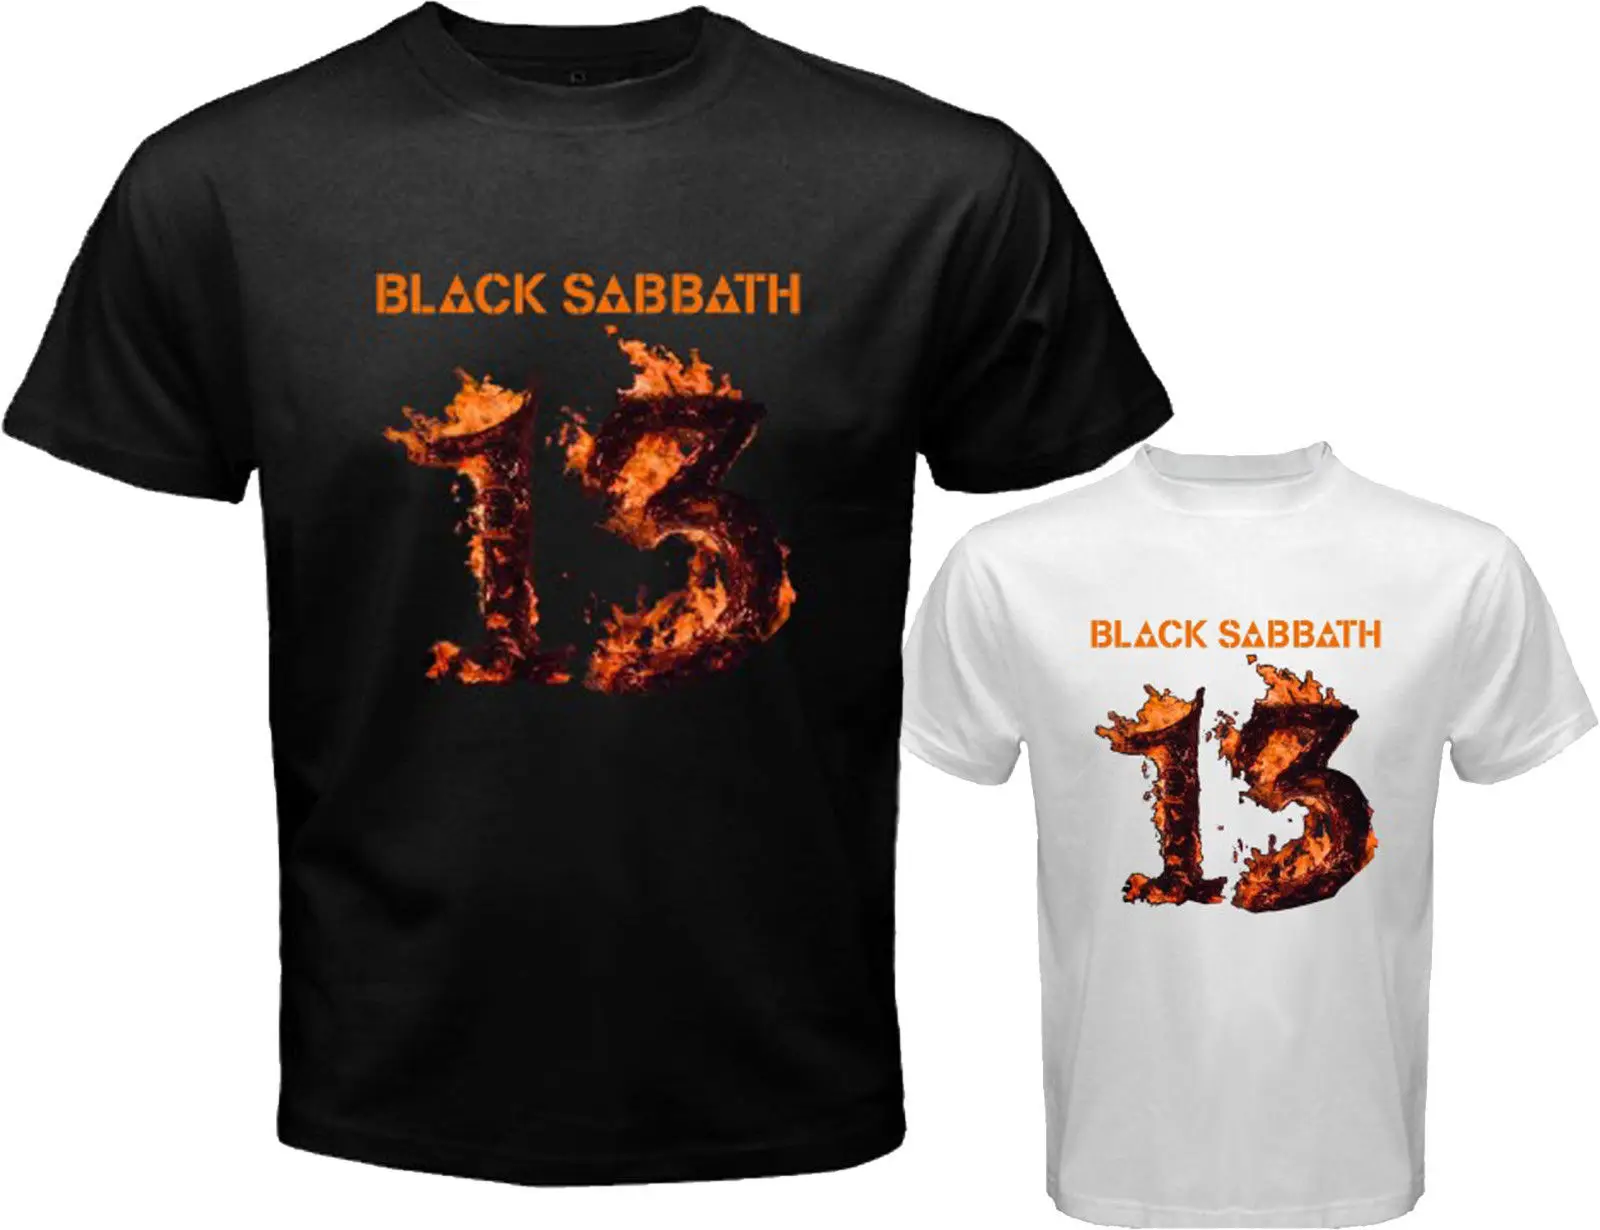 Black Sabbath 13 Album Tour логотип Metal Rock Для мужчин белый черный футболка Размеры S-3XL |